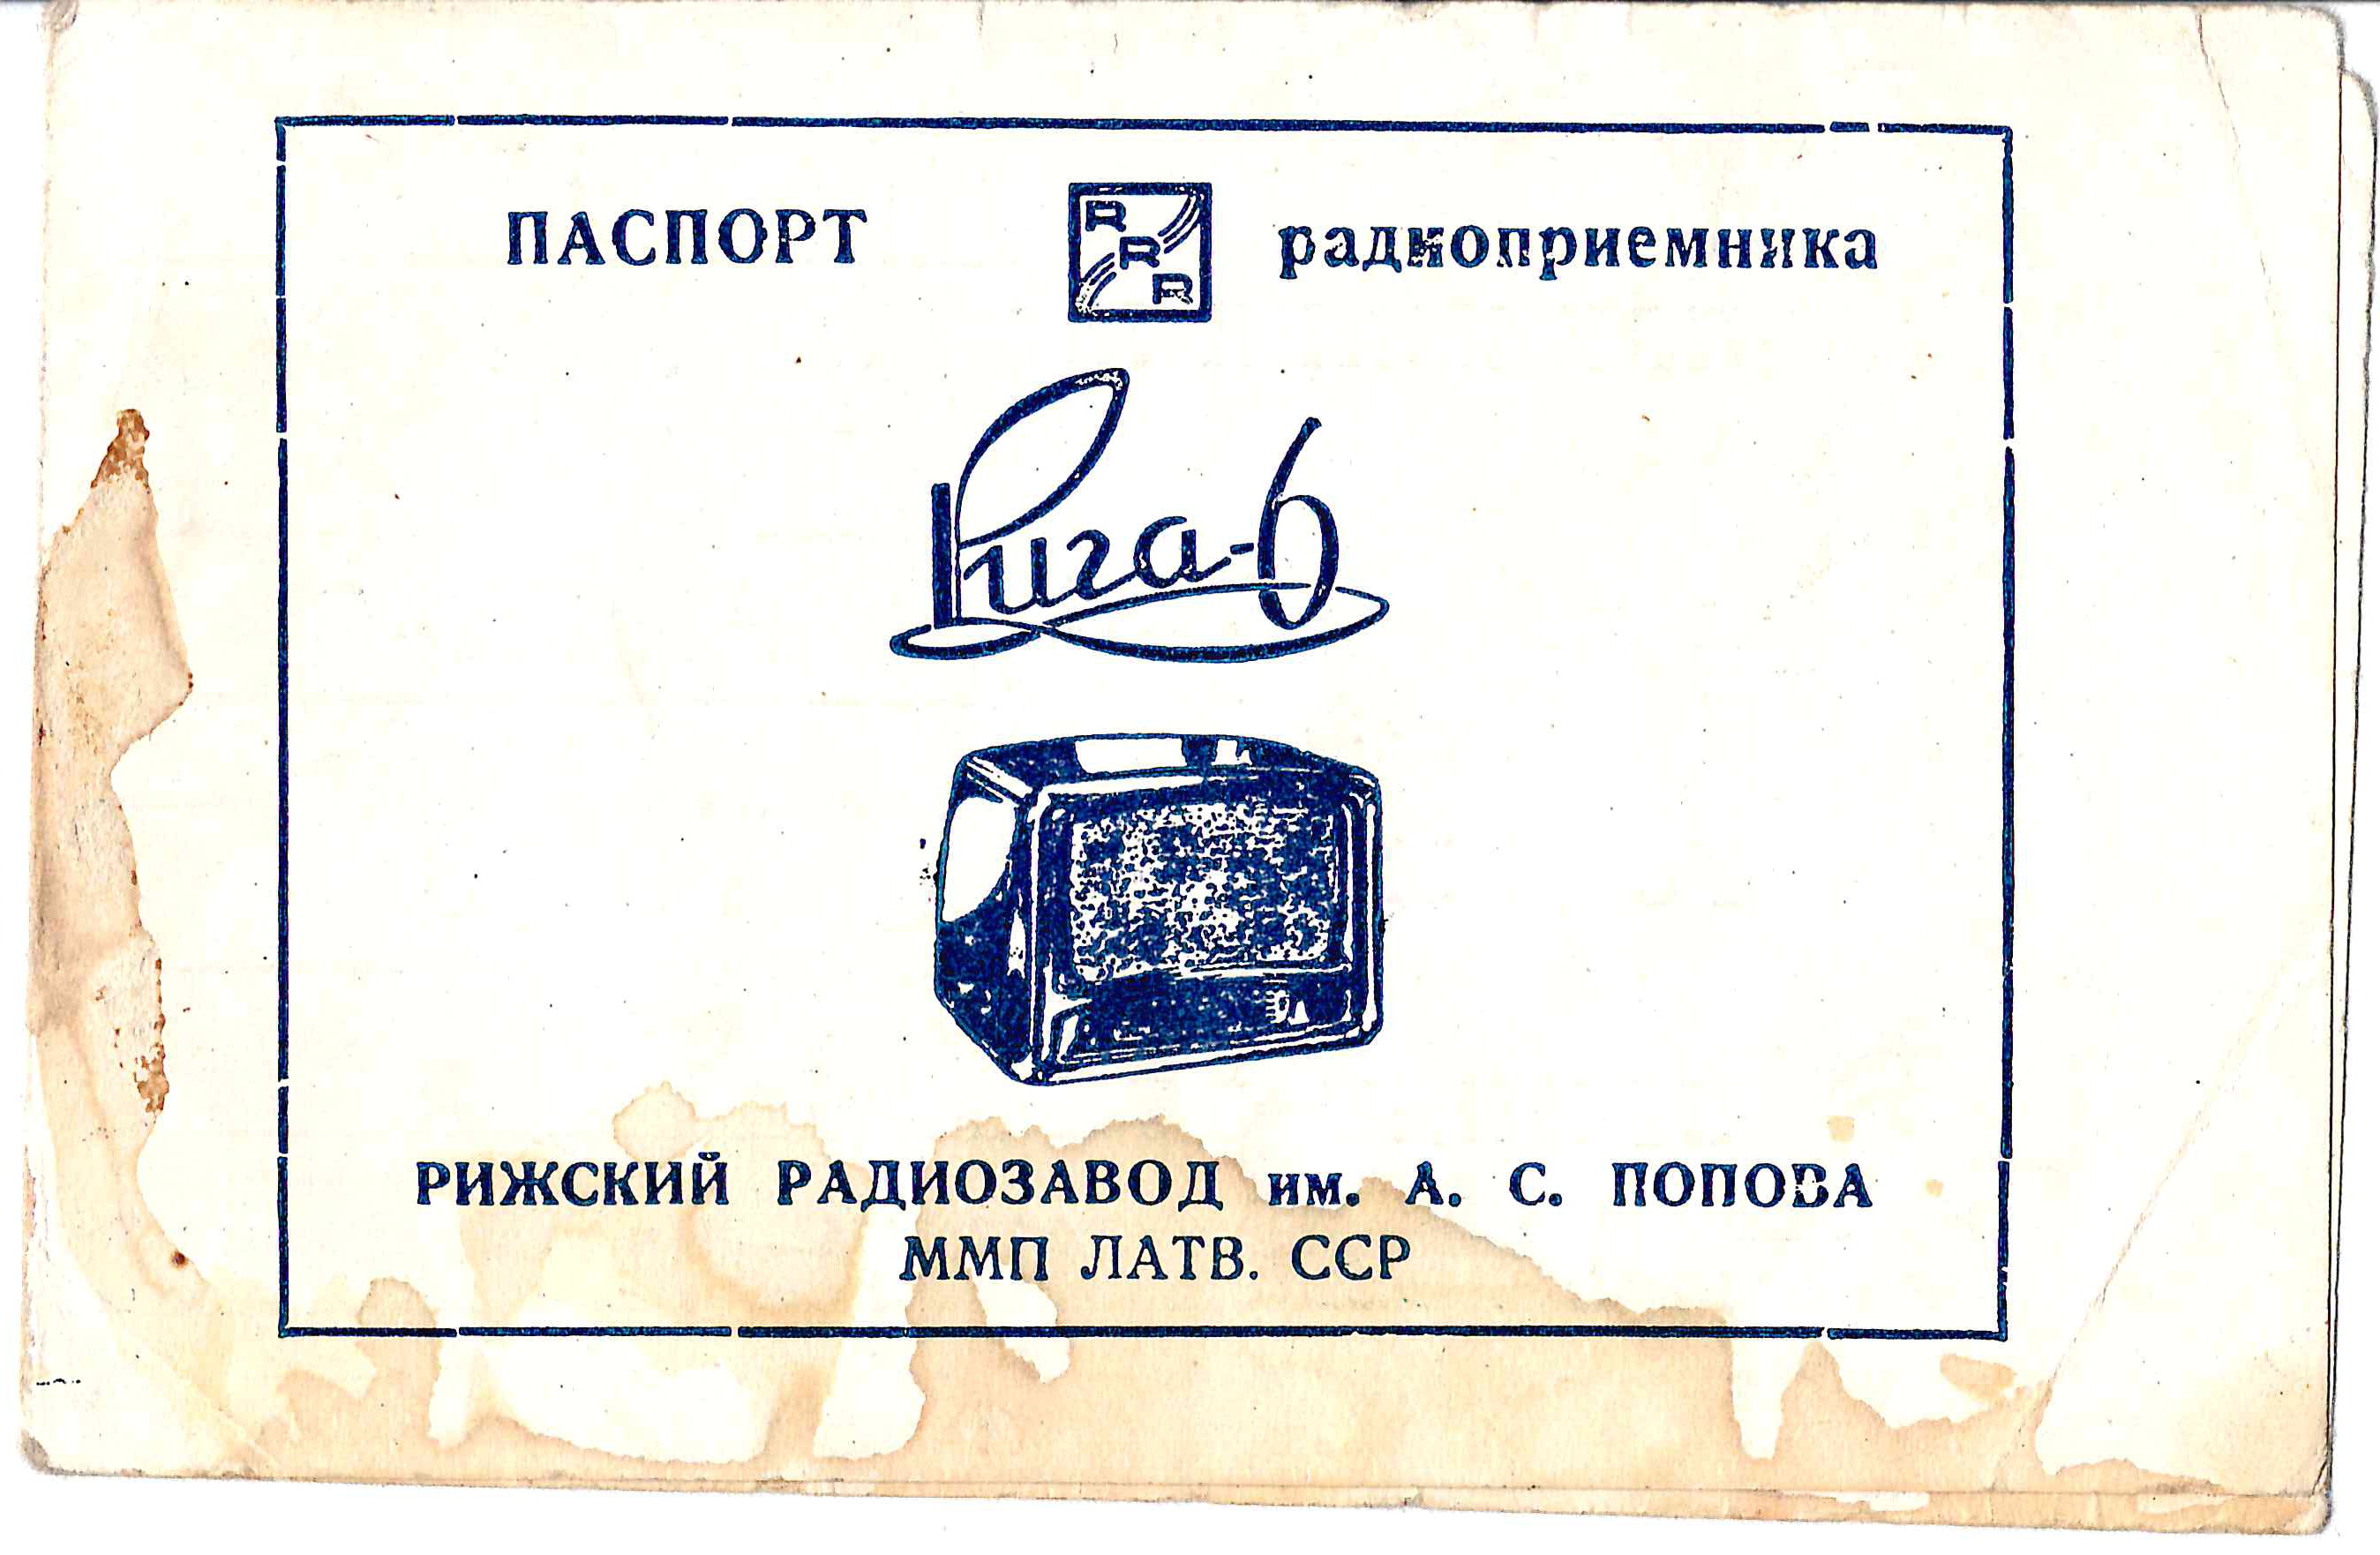 Удостоверение абонента на право пользования радиоприёмником «Рига-6» на имя Татьяны Николаевны Сидоровой и паспорт радиоприёмника «Рига-6». СССР, 1950-е годы.